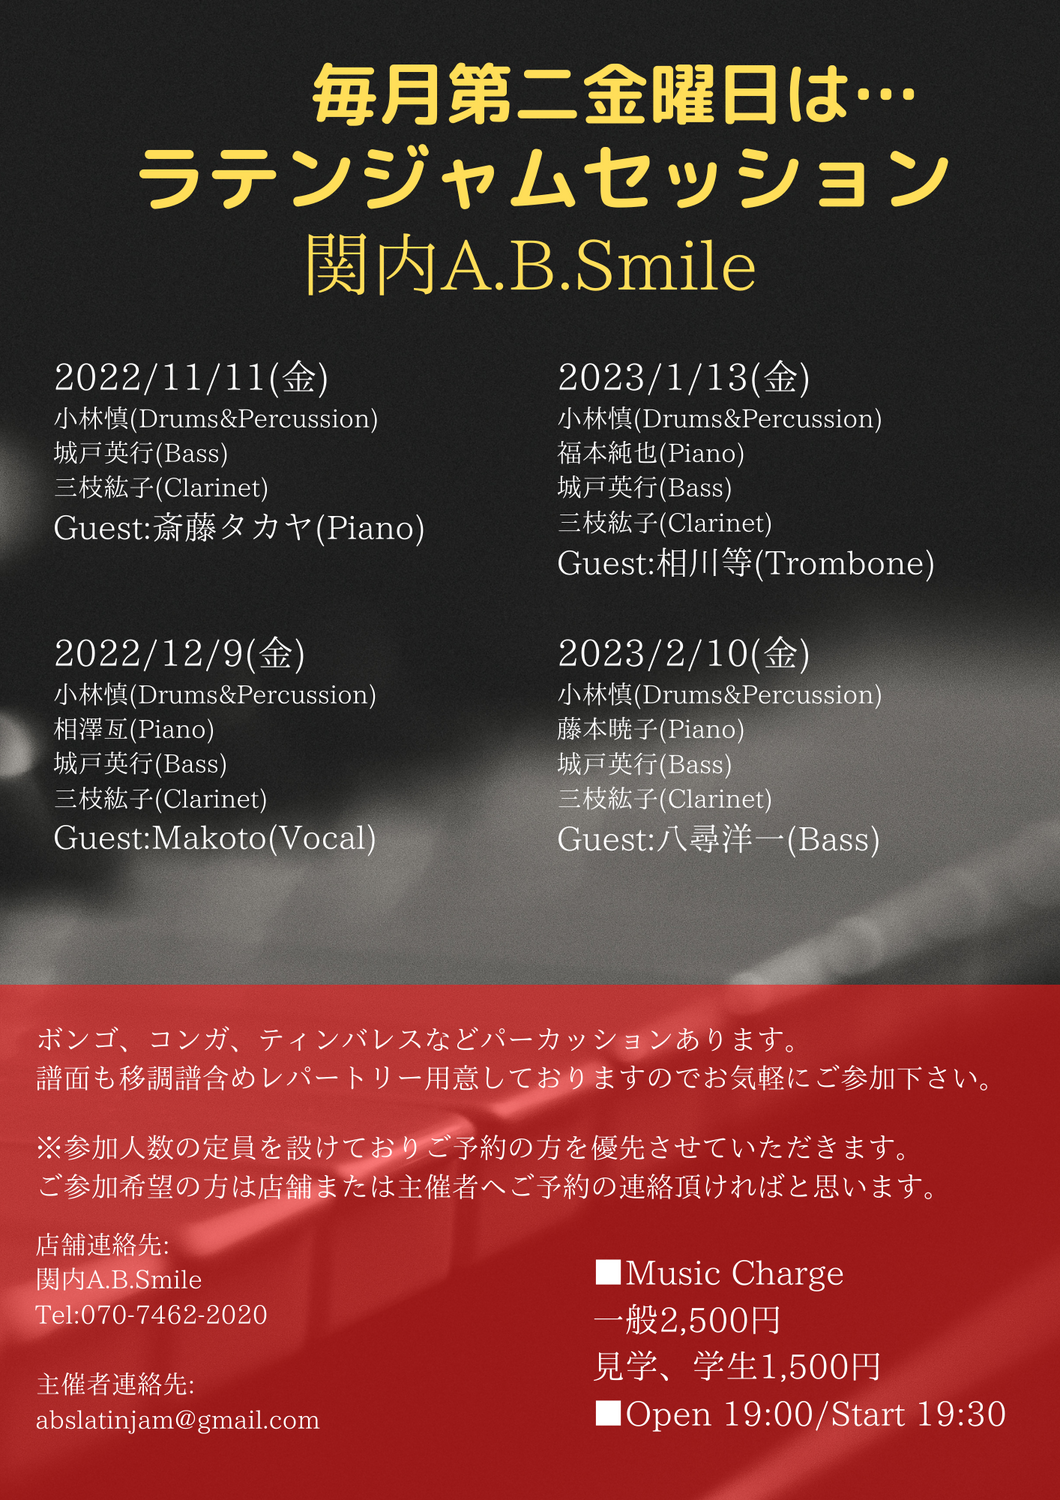 2023/2/10(金)「Latin Jam Session」 @ 関内A.B.Smile